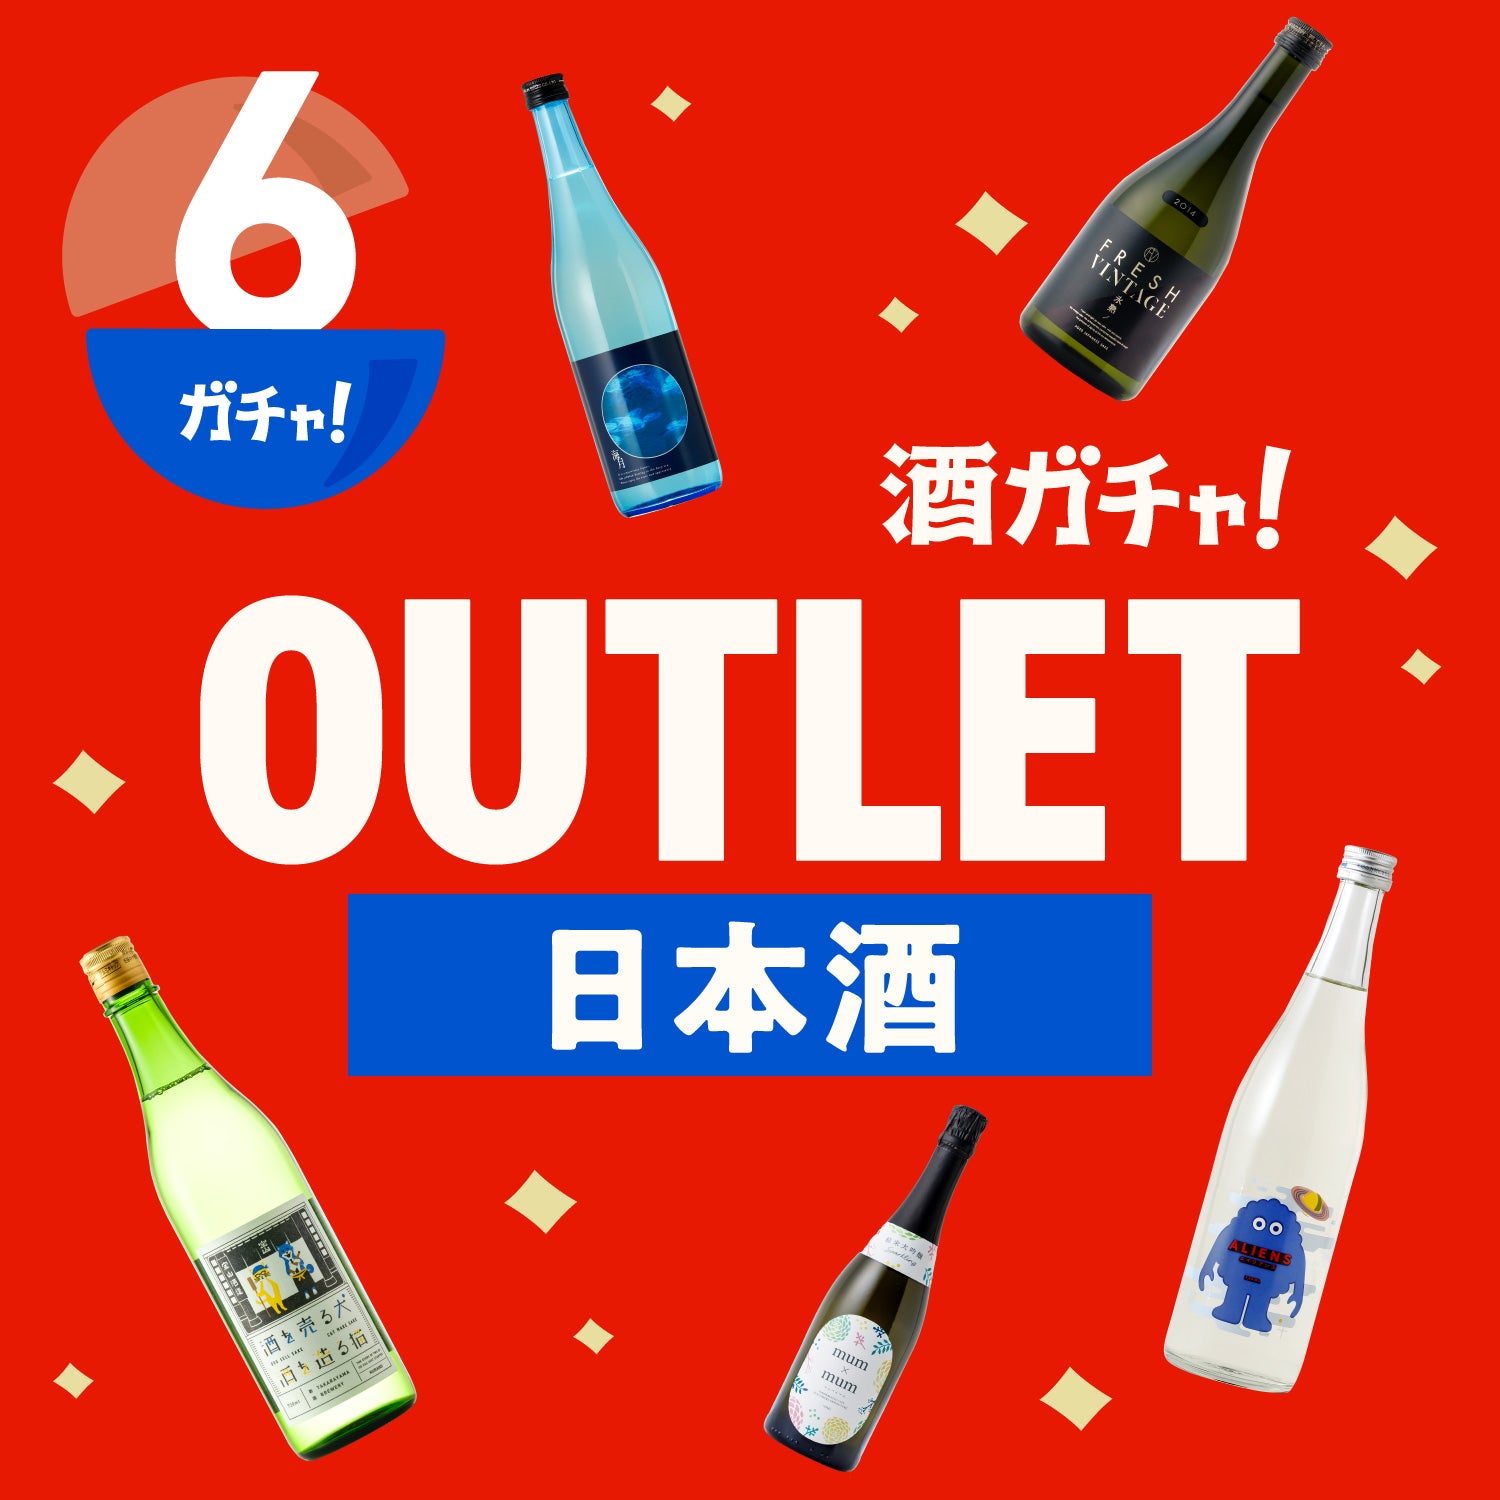 【6本】酒ガチャアウトレット -日本酒-【1月31日まで】